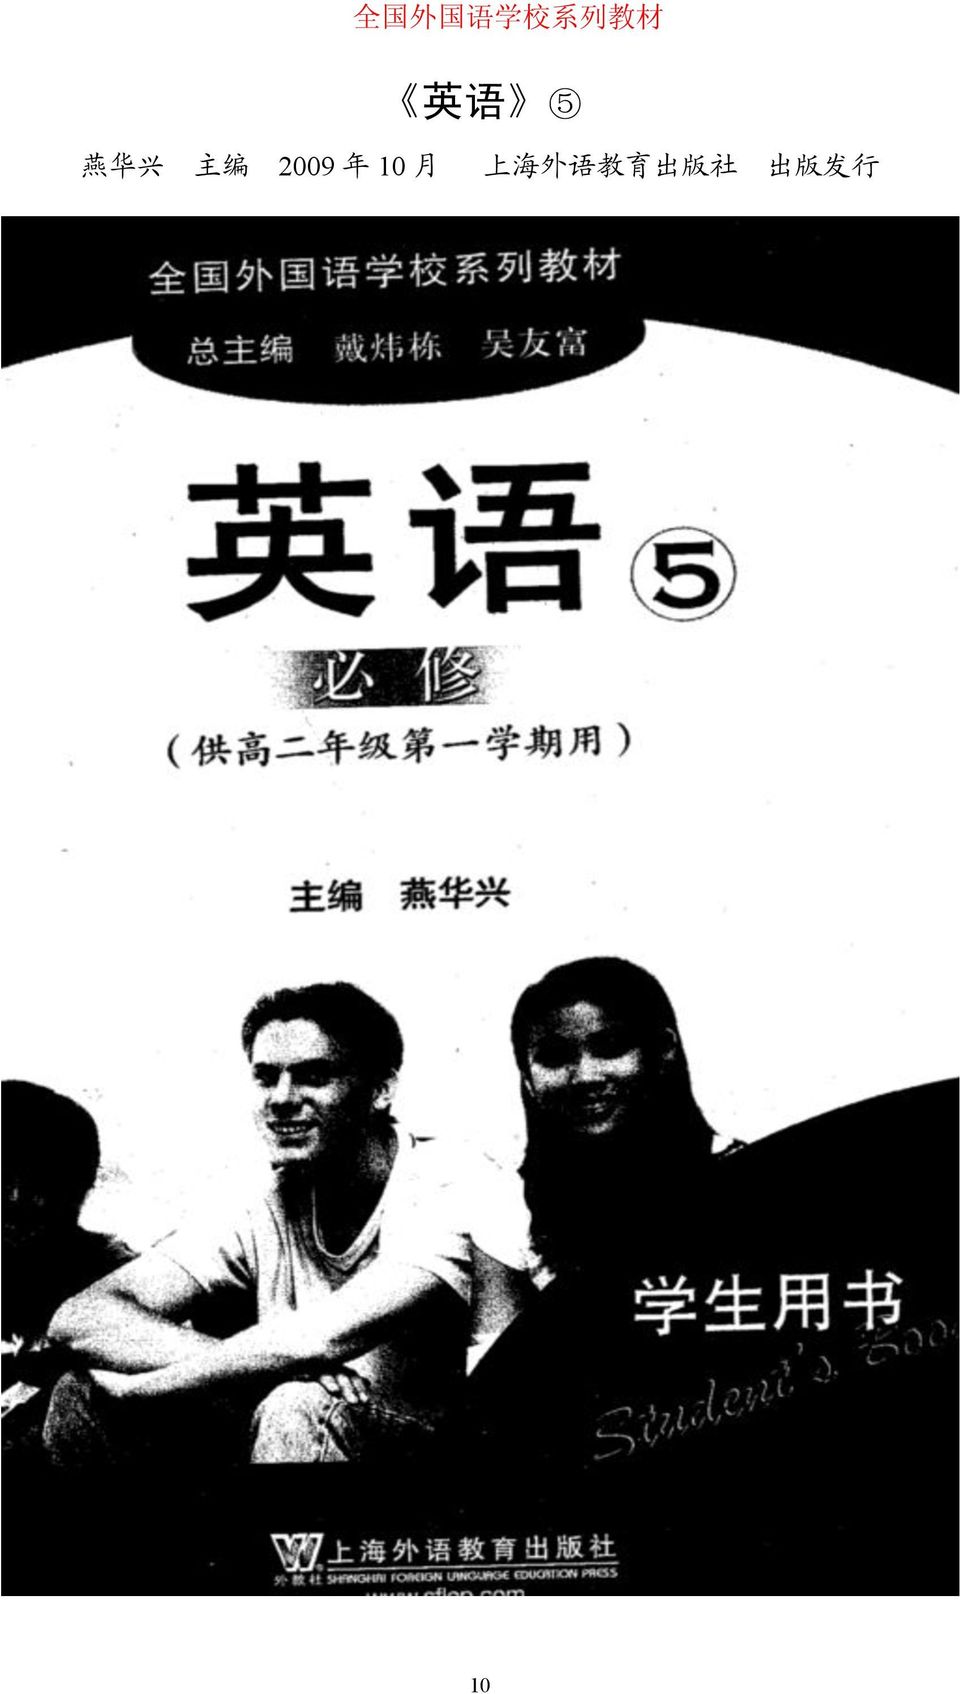 2009 年 10 月 上 海 外 语